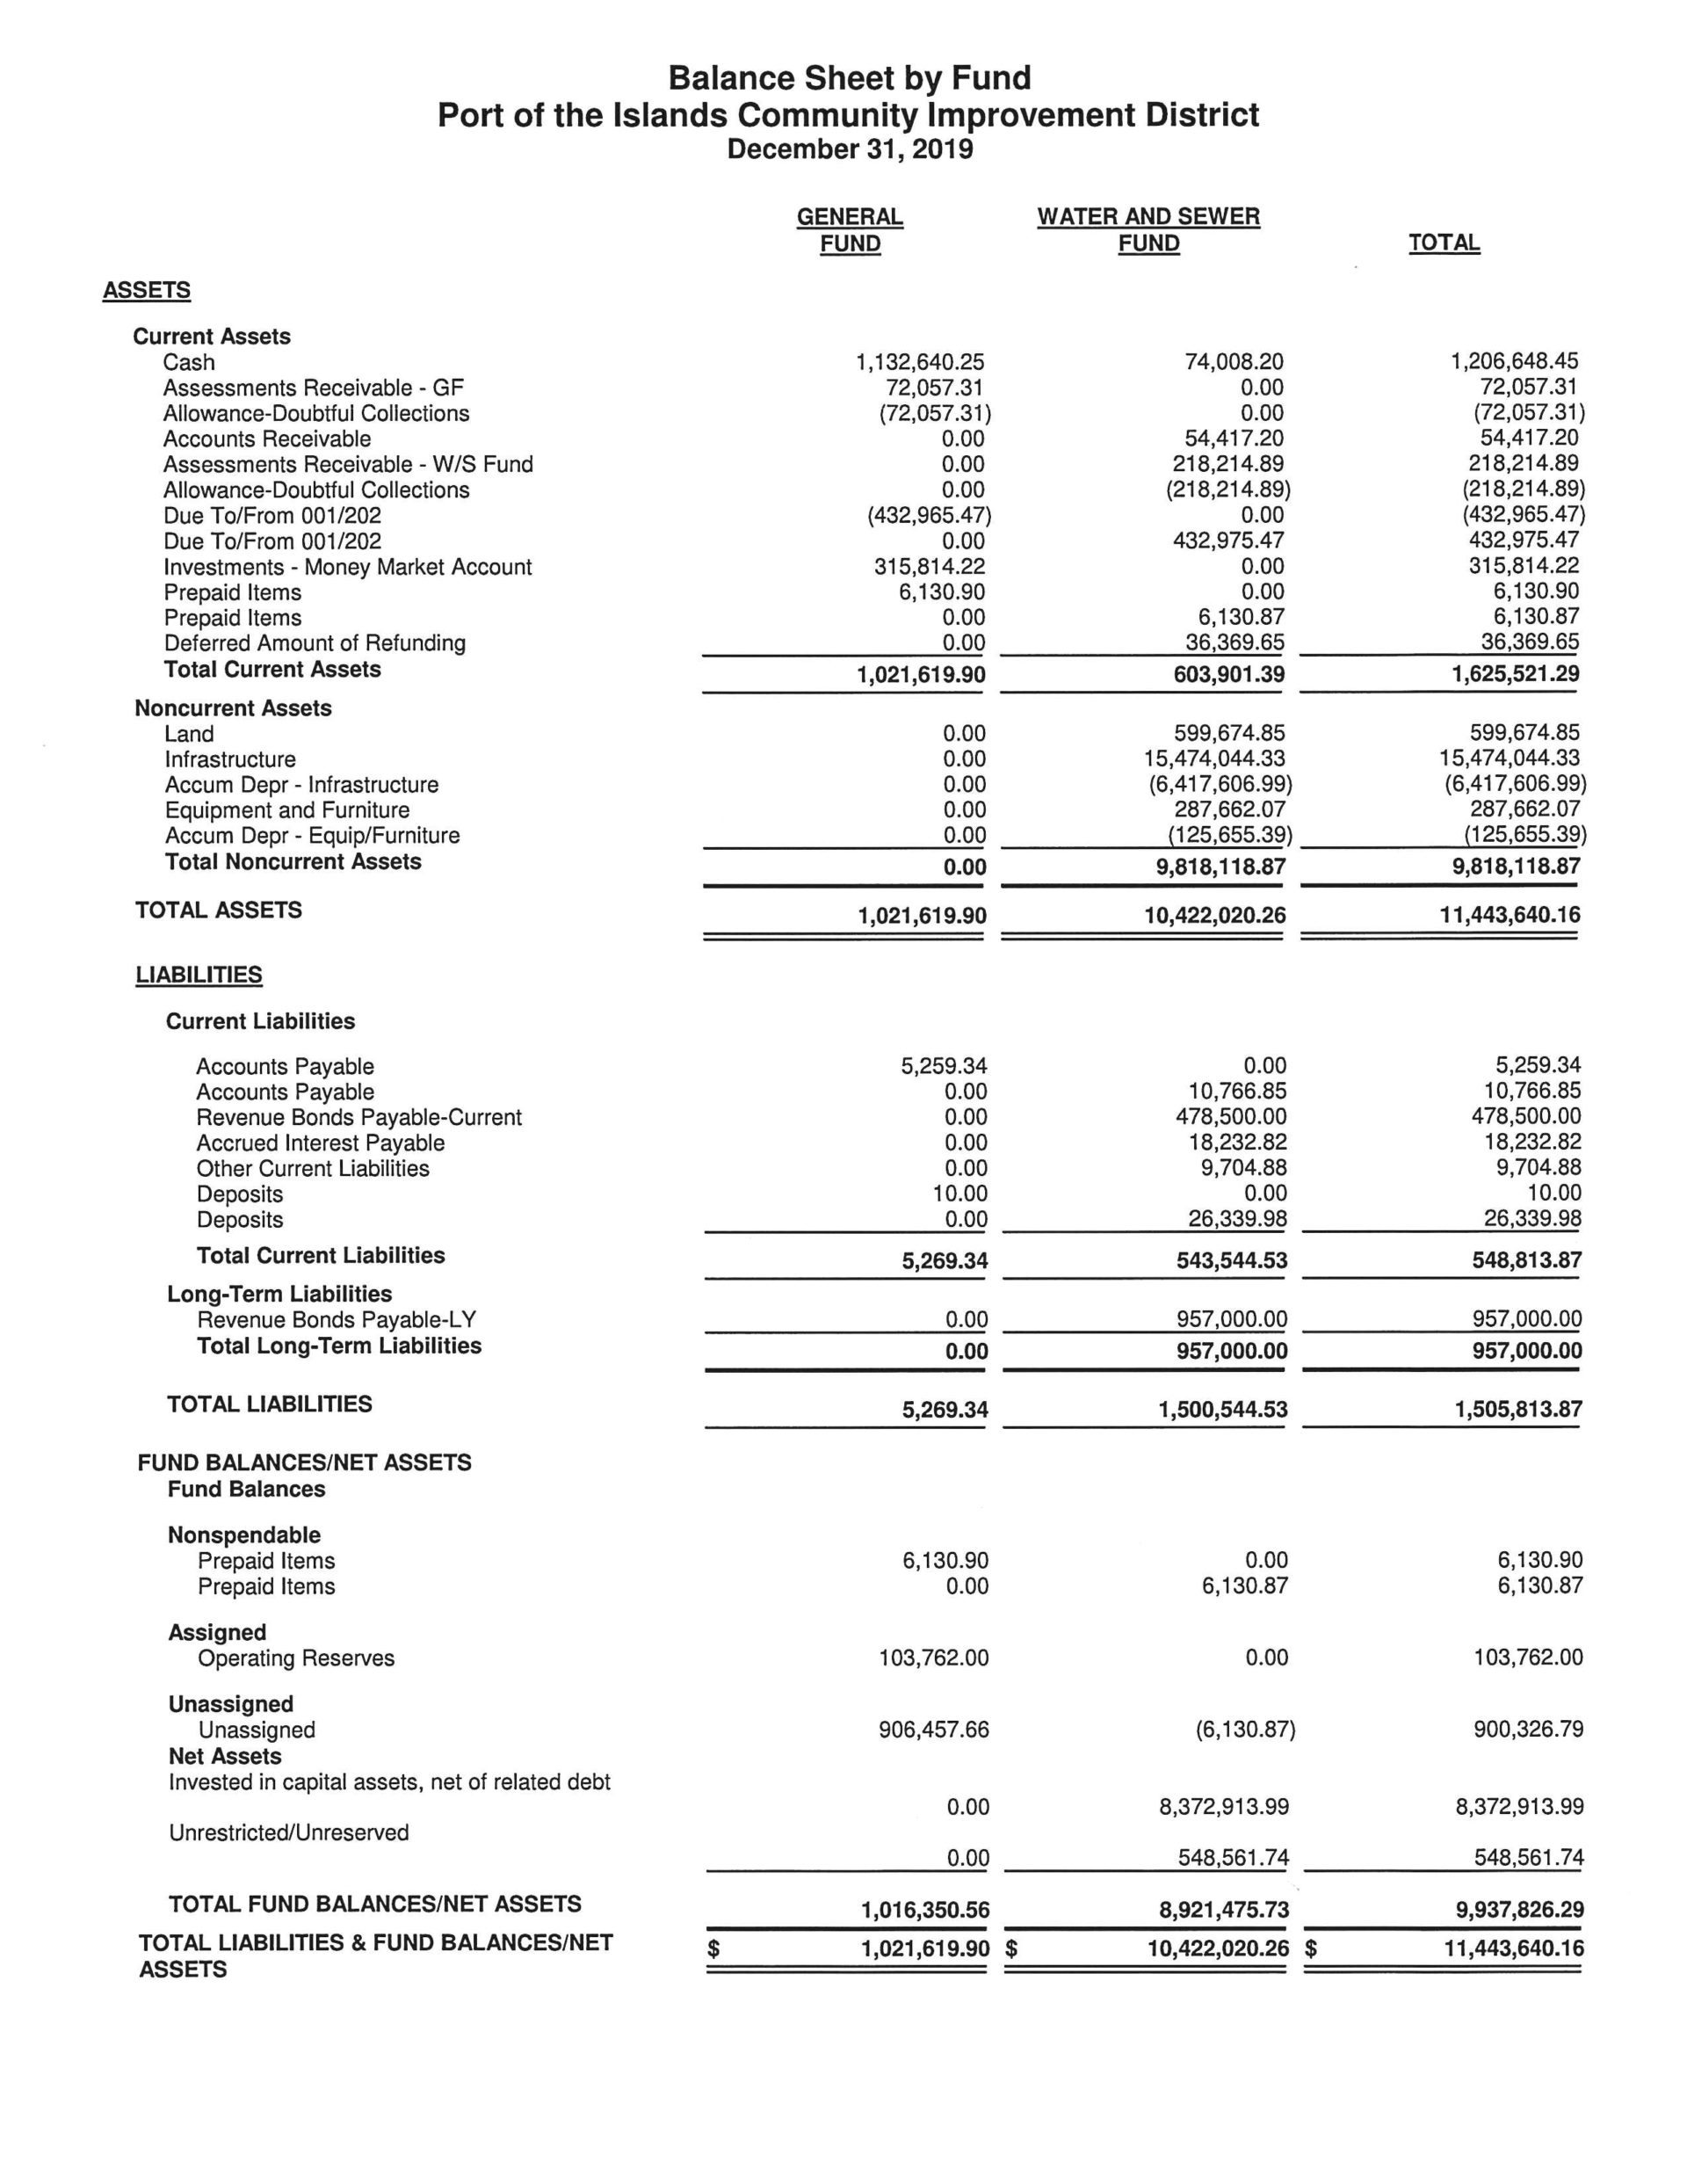 Port of the Islands Financial Report - December 2019 Balance Sheet